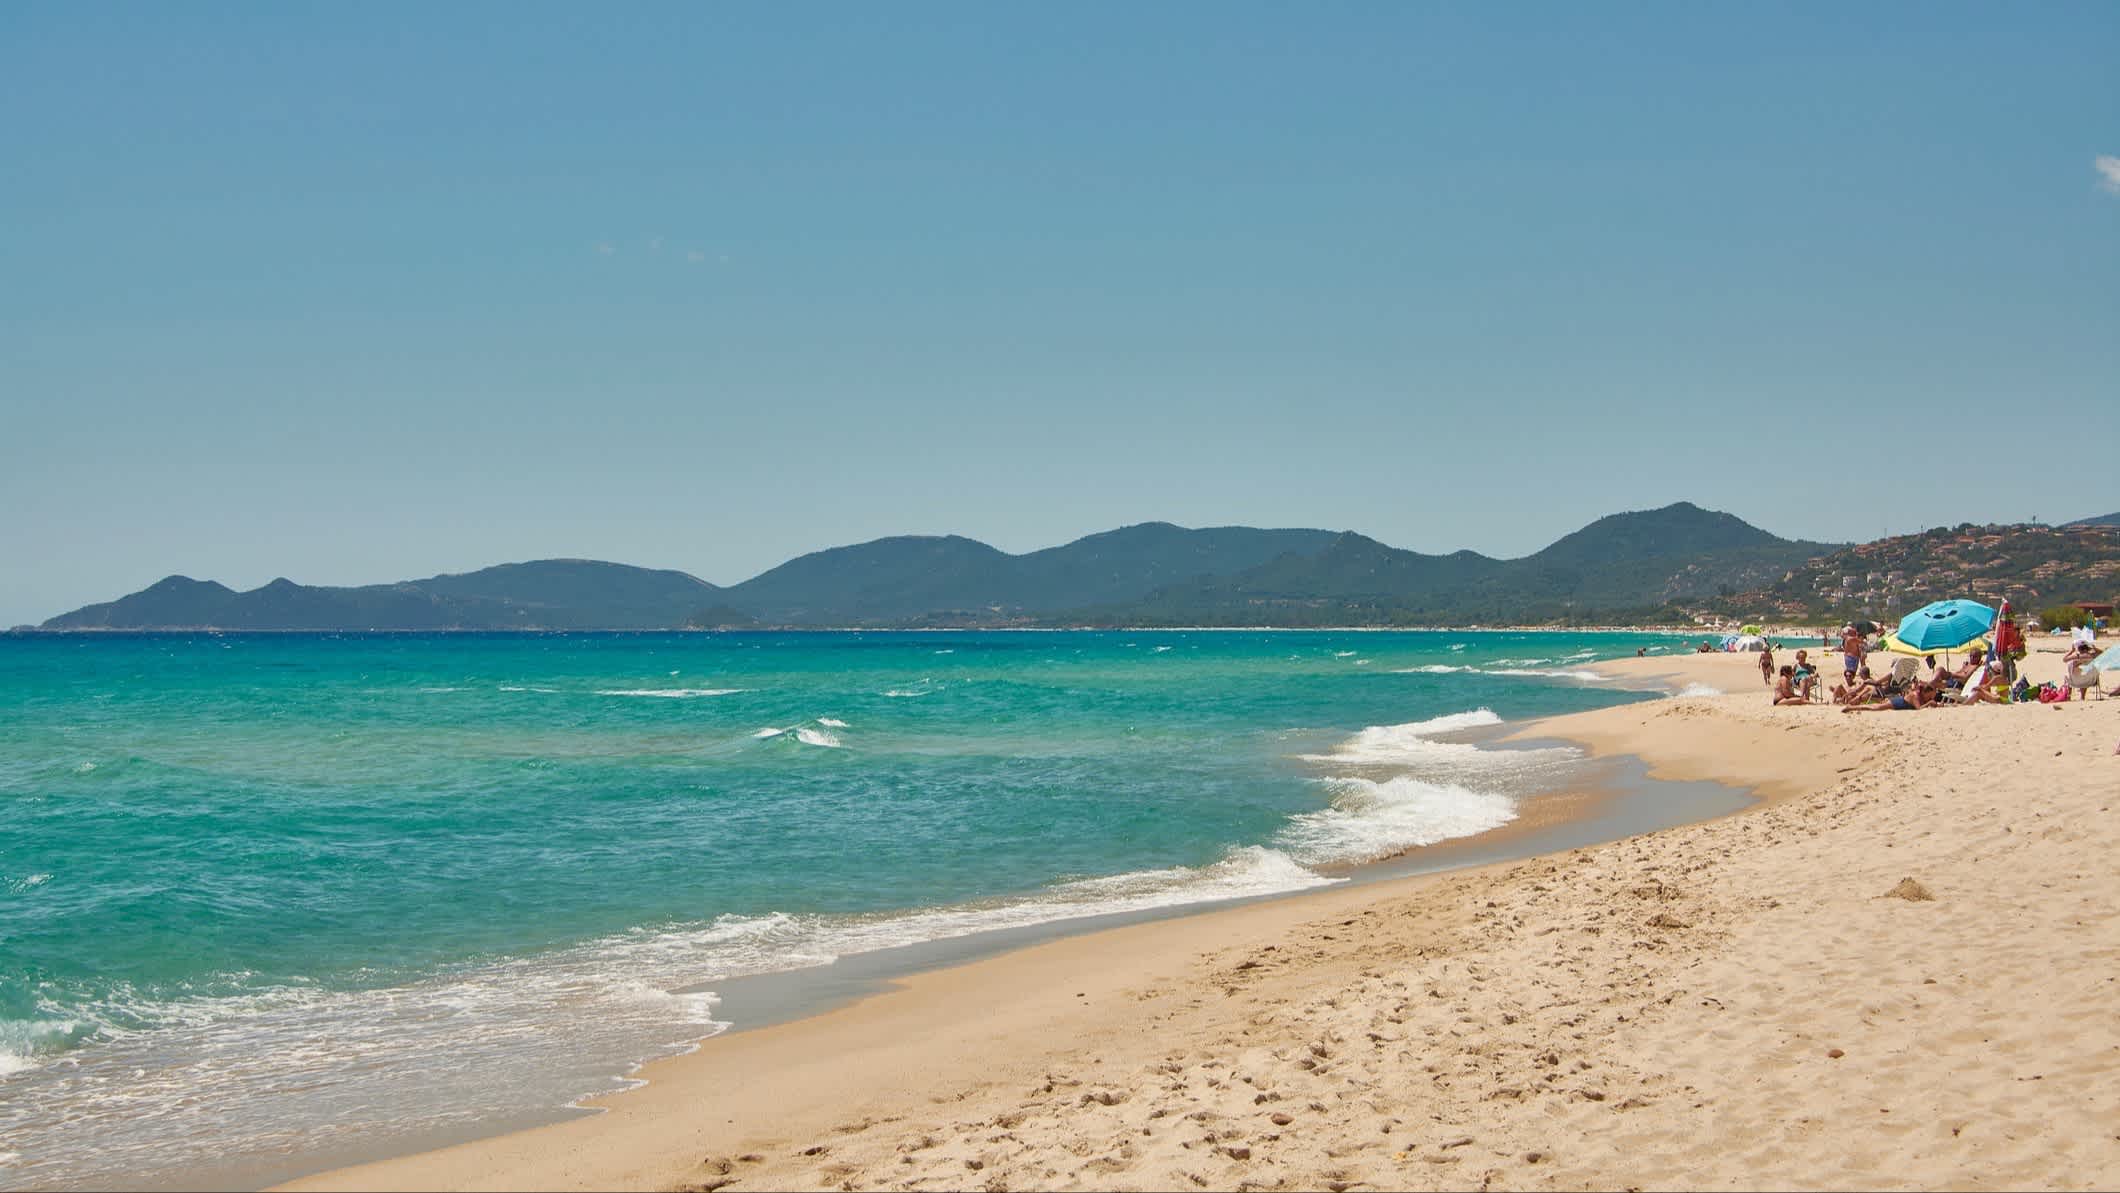 Die Landschaft des Strandes von Costa Rei in Muravera, Sardinien, Italien bei sonnigem Wetter und mit Menschen am Strand.